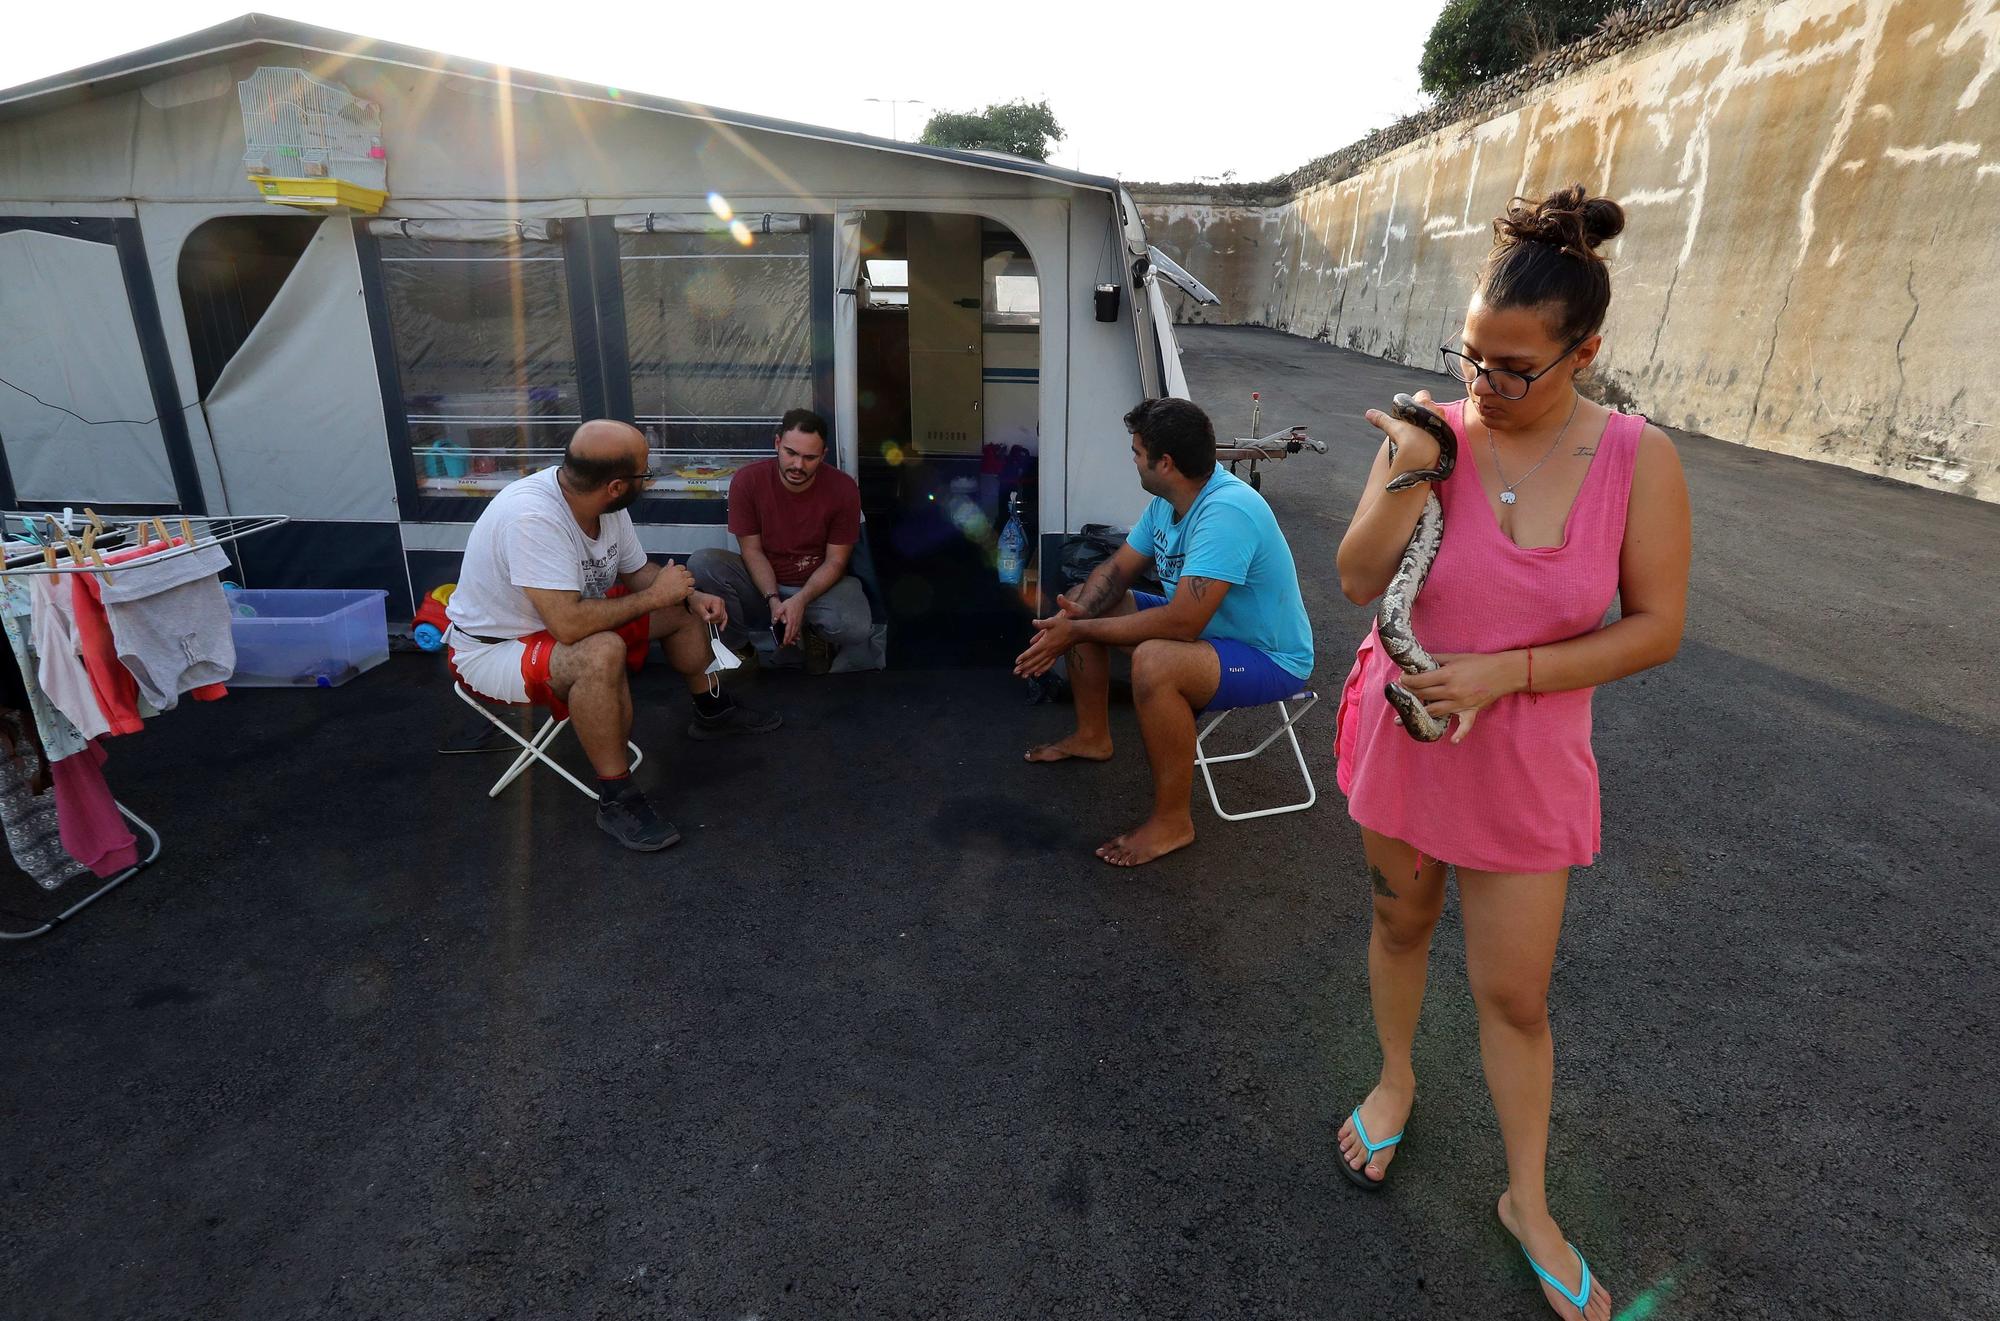 La vida en una caravana 46 días después de la erupción en La Palma